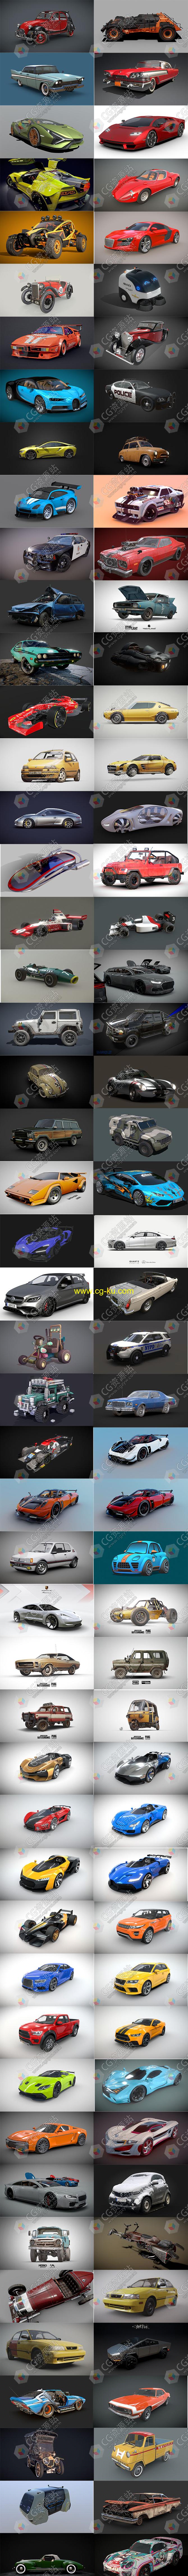 100辆汽车3D模型合集(blend/fbx格式）的图片1